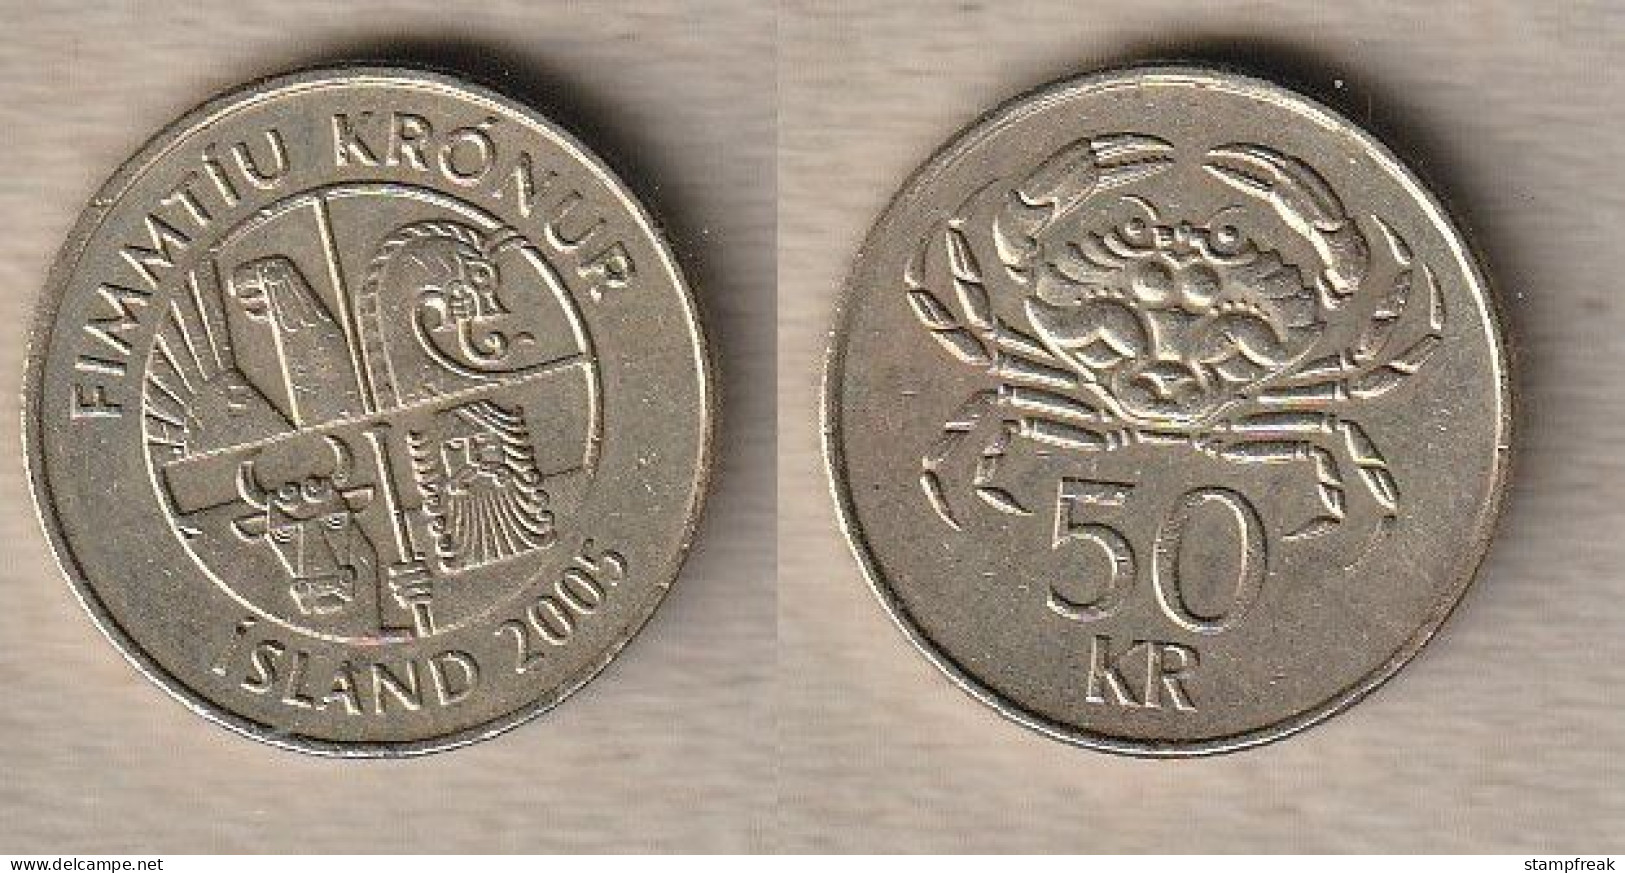 02458) Island, 50 Kronen 2005 - Iceland